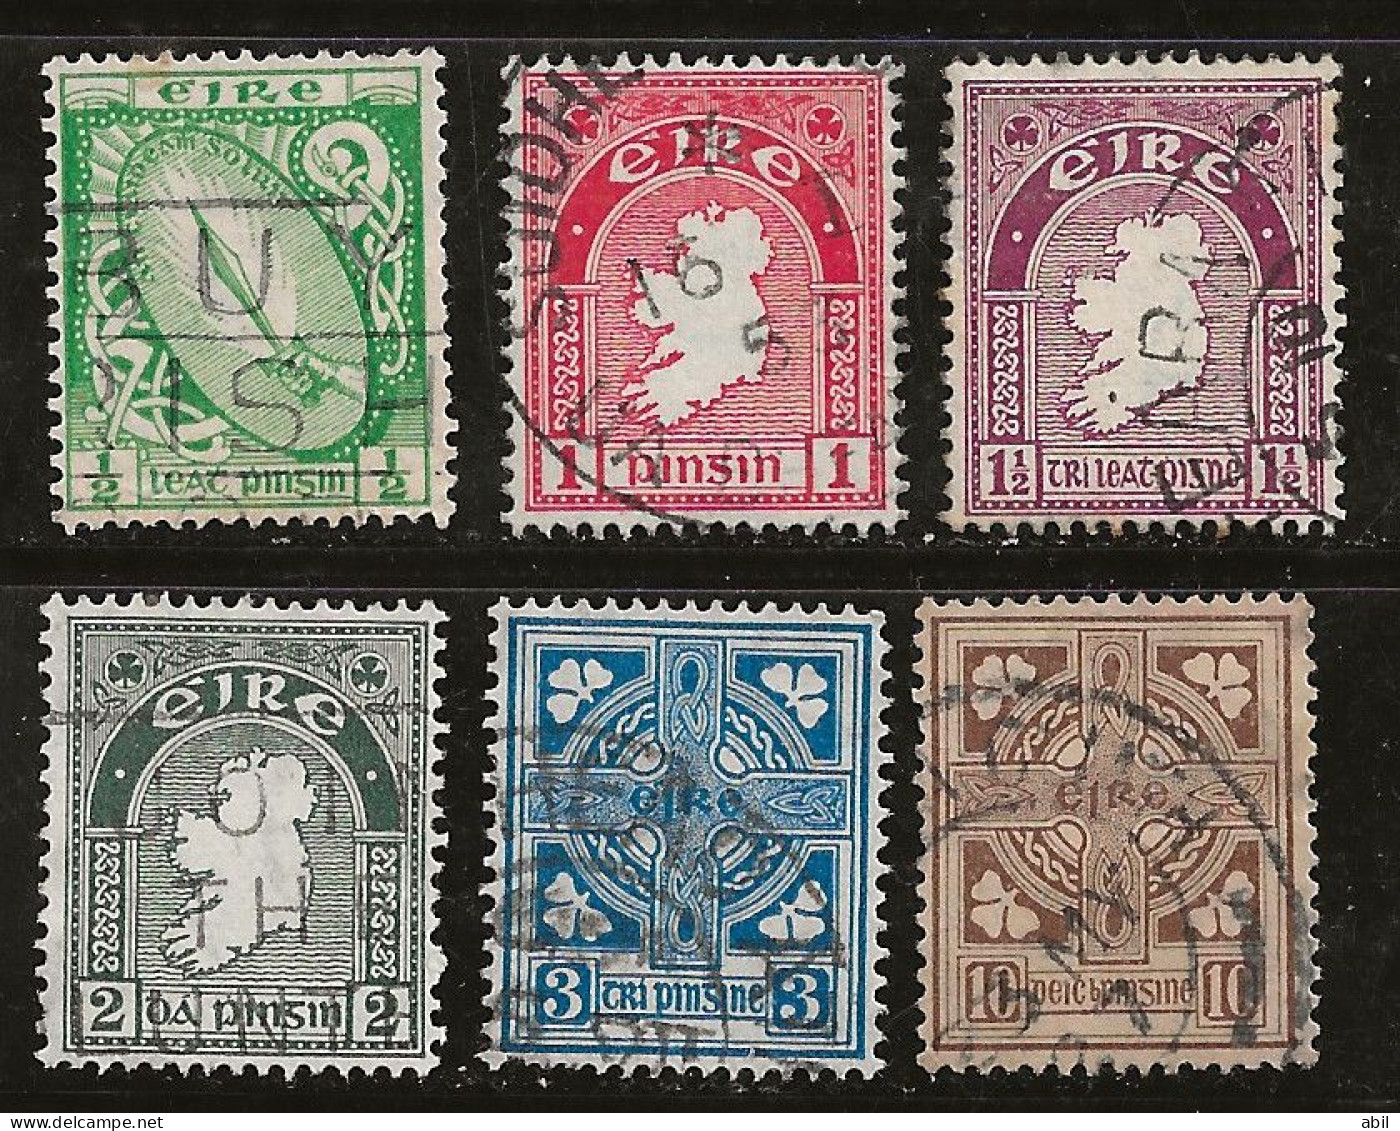 Irlande 1922-1924 N° Y&T : 40 à 43,45 Et 50 Obl. - Usati